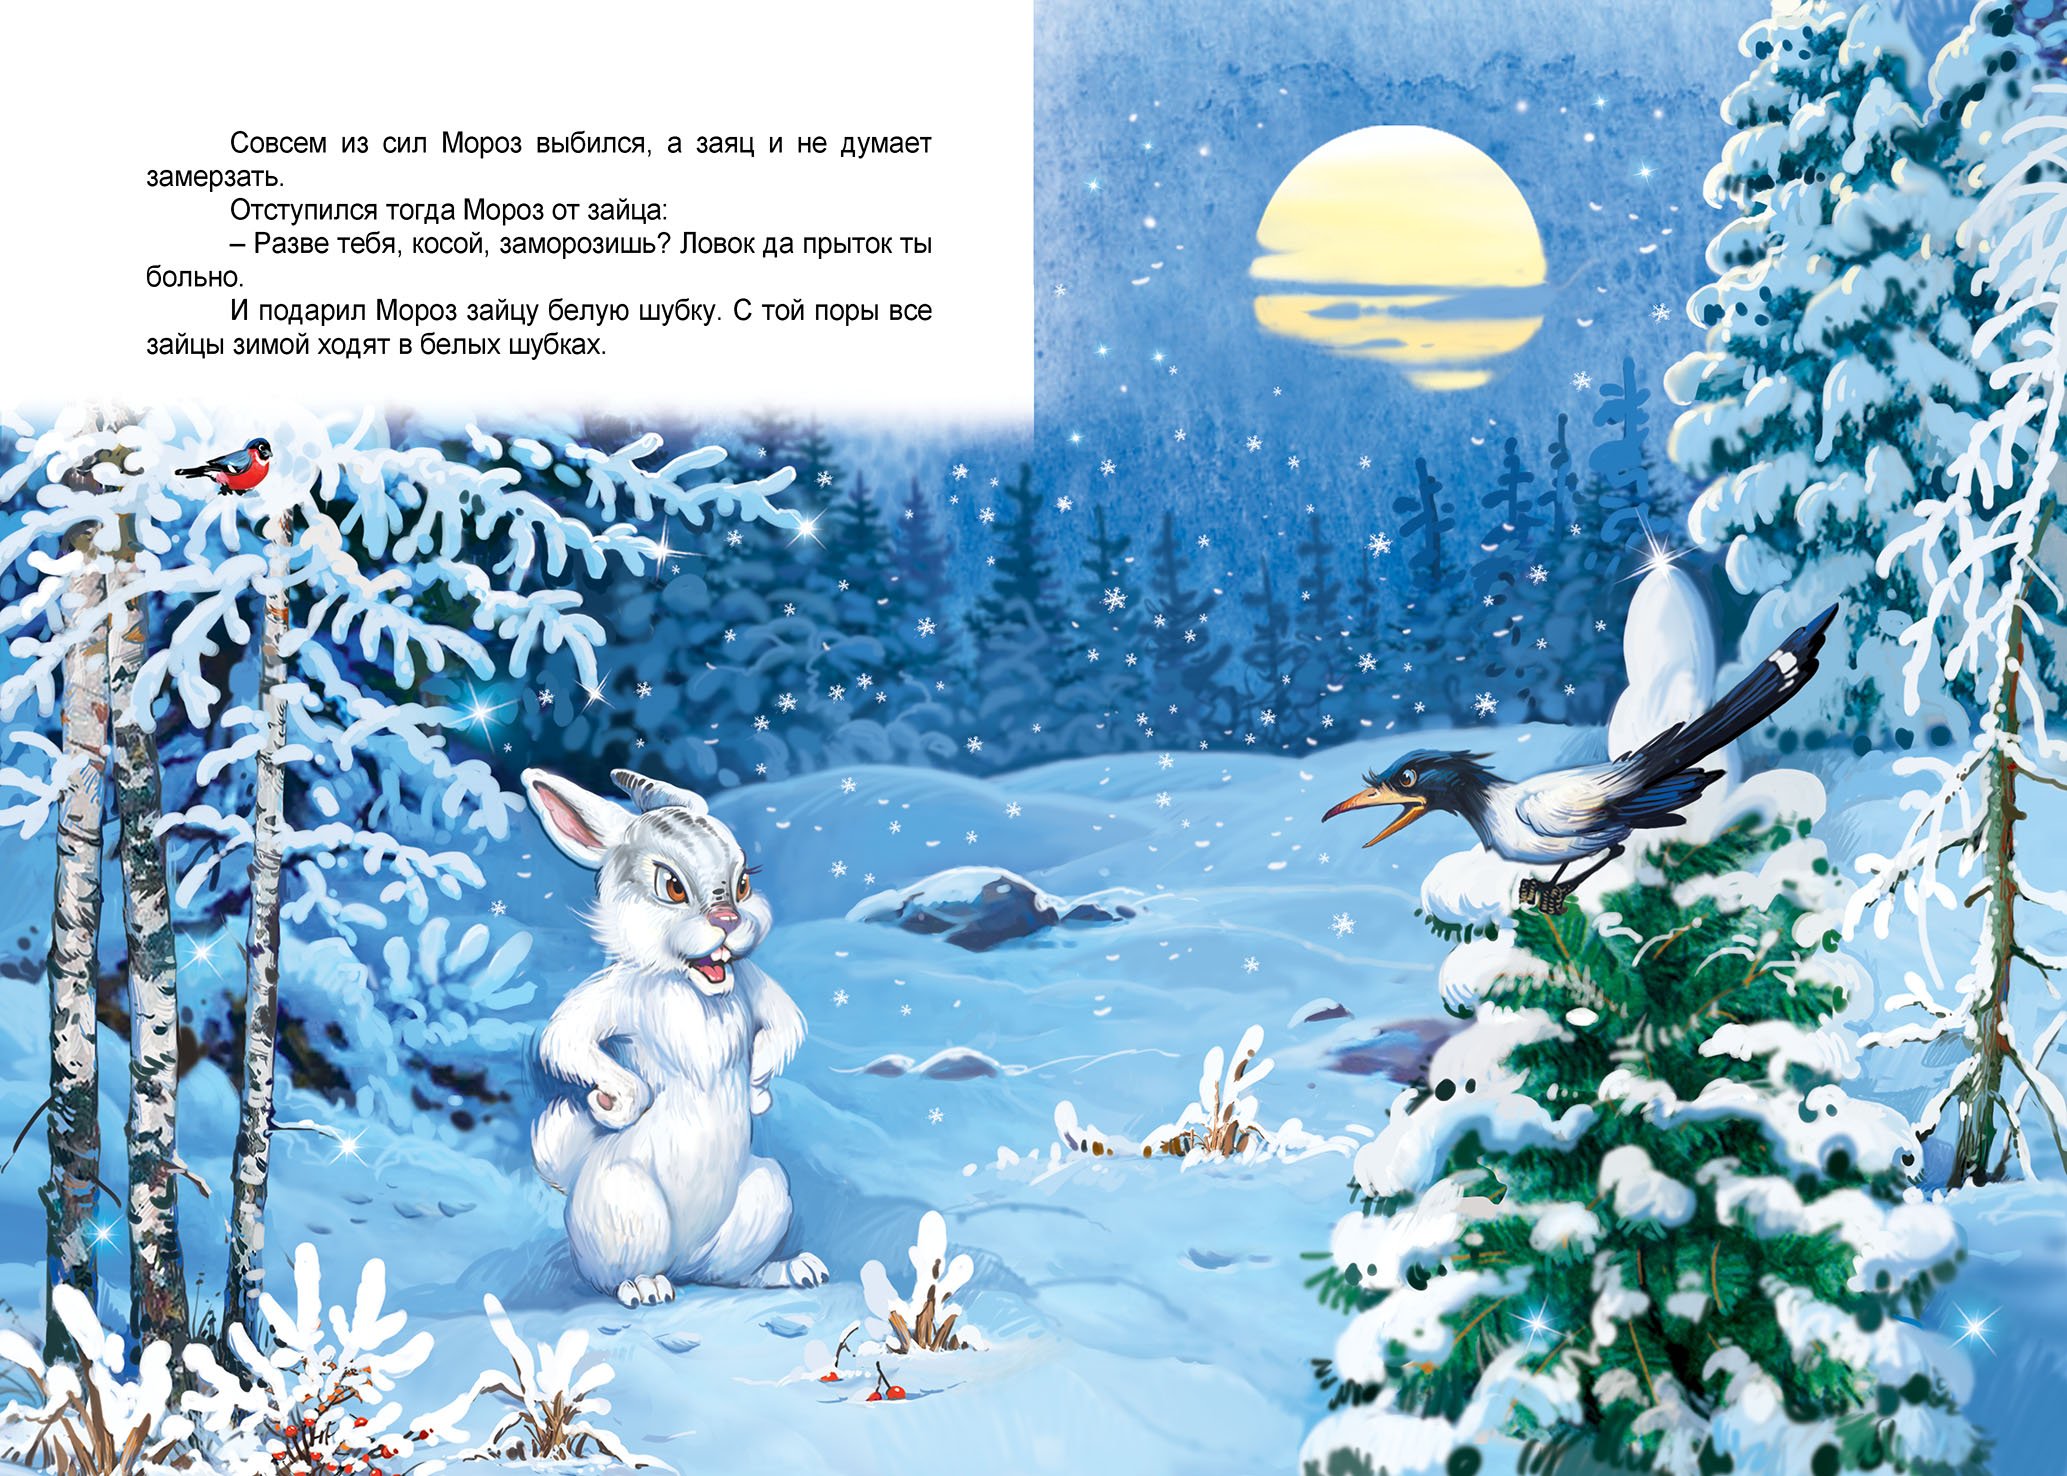 Сказка зима читать. Сказка Мороз и заяц. Иллюстрации к сказке Мороз и заяц. Зимние сказки для детей. Сказка про зайца зимой.